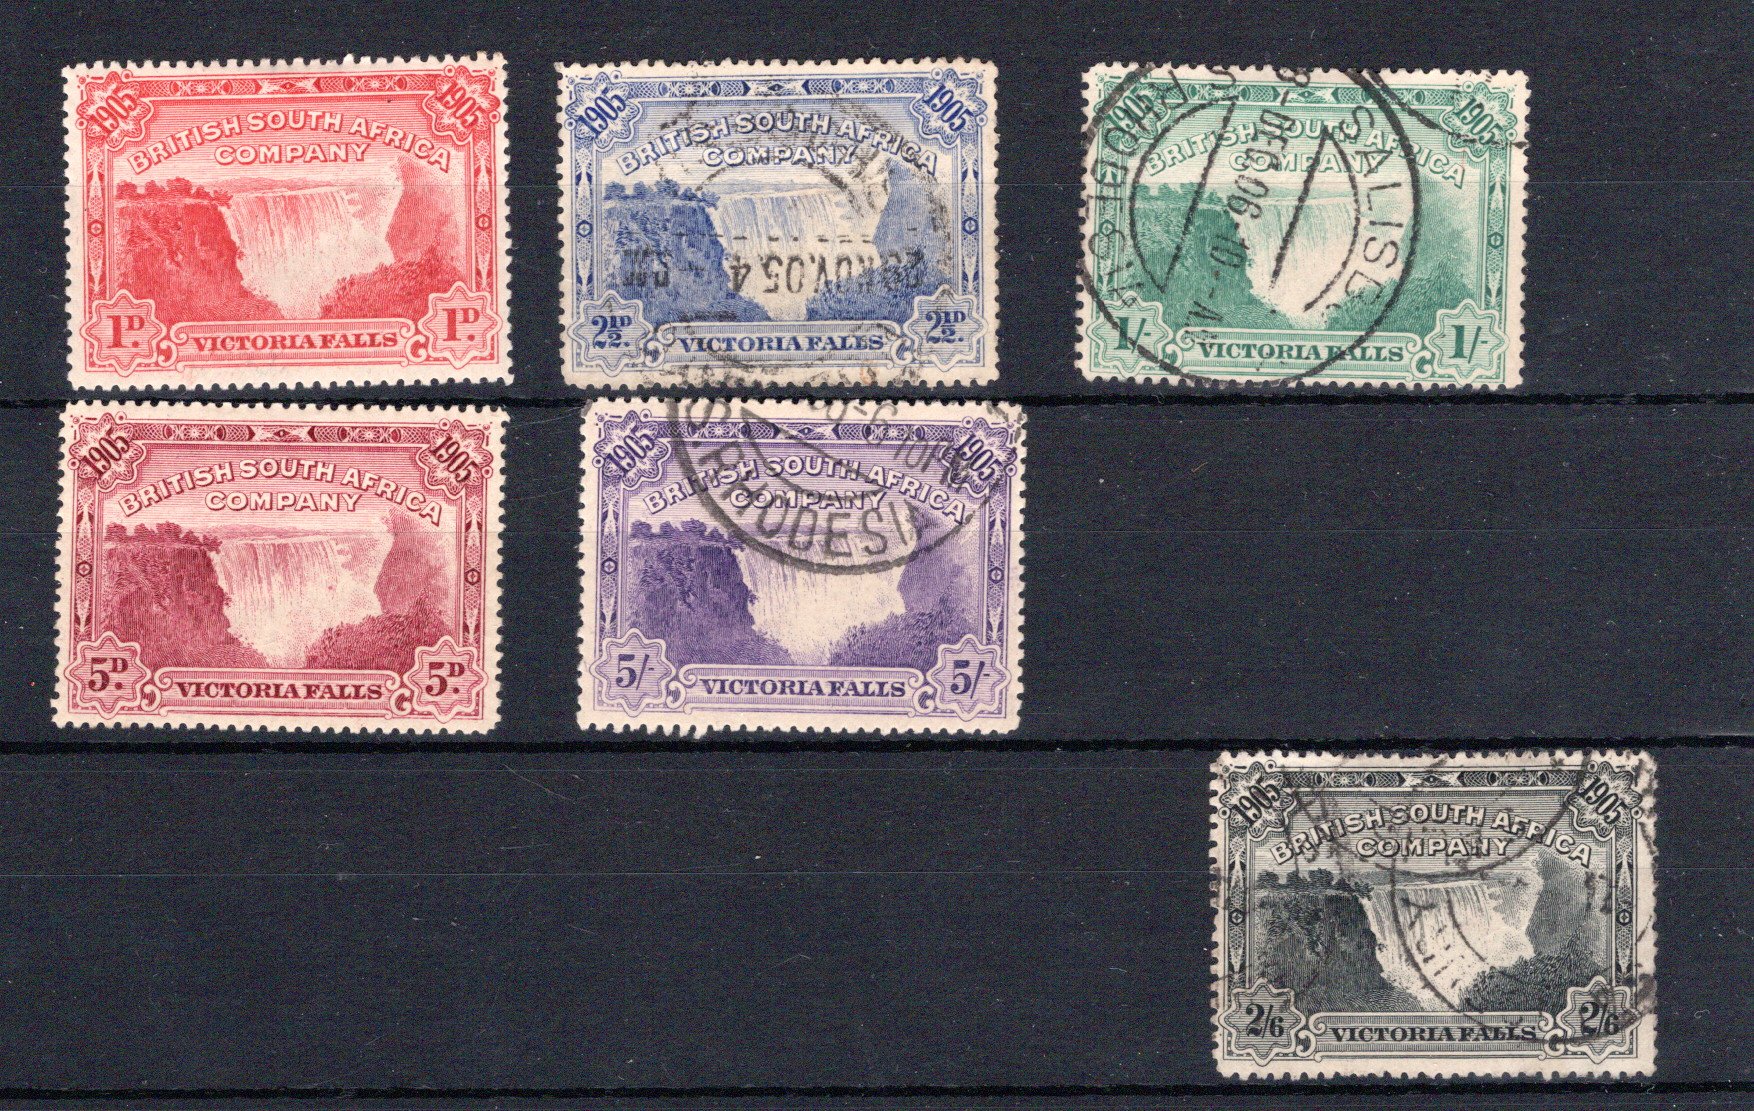 Lot 77 - British Commonwealth Britsh South Africa Company -  Georg Bühler Briefmarken Auktionen GmbH Georg Bühler 336 auction